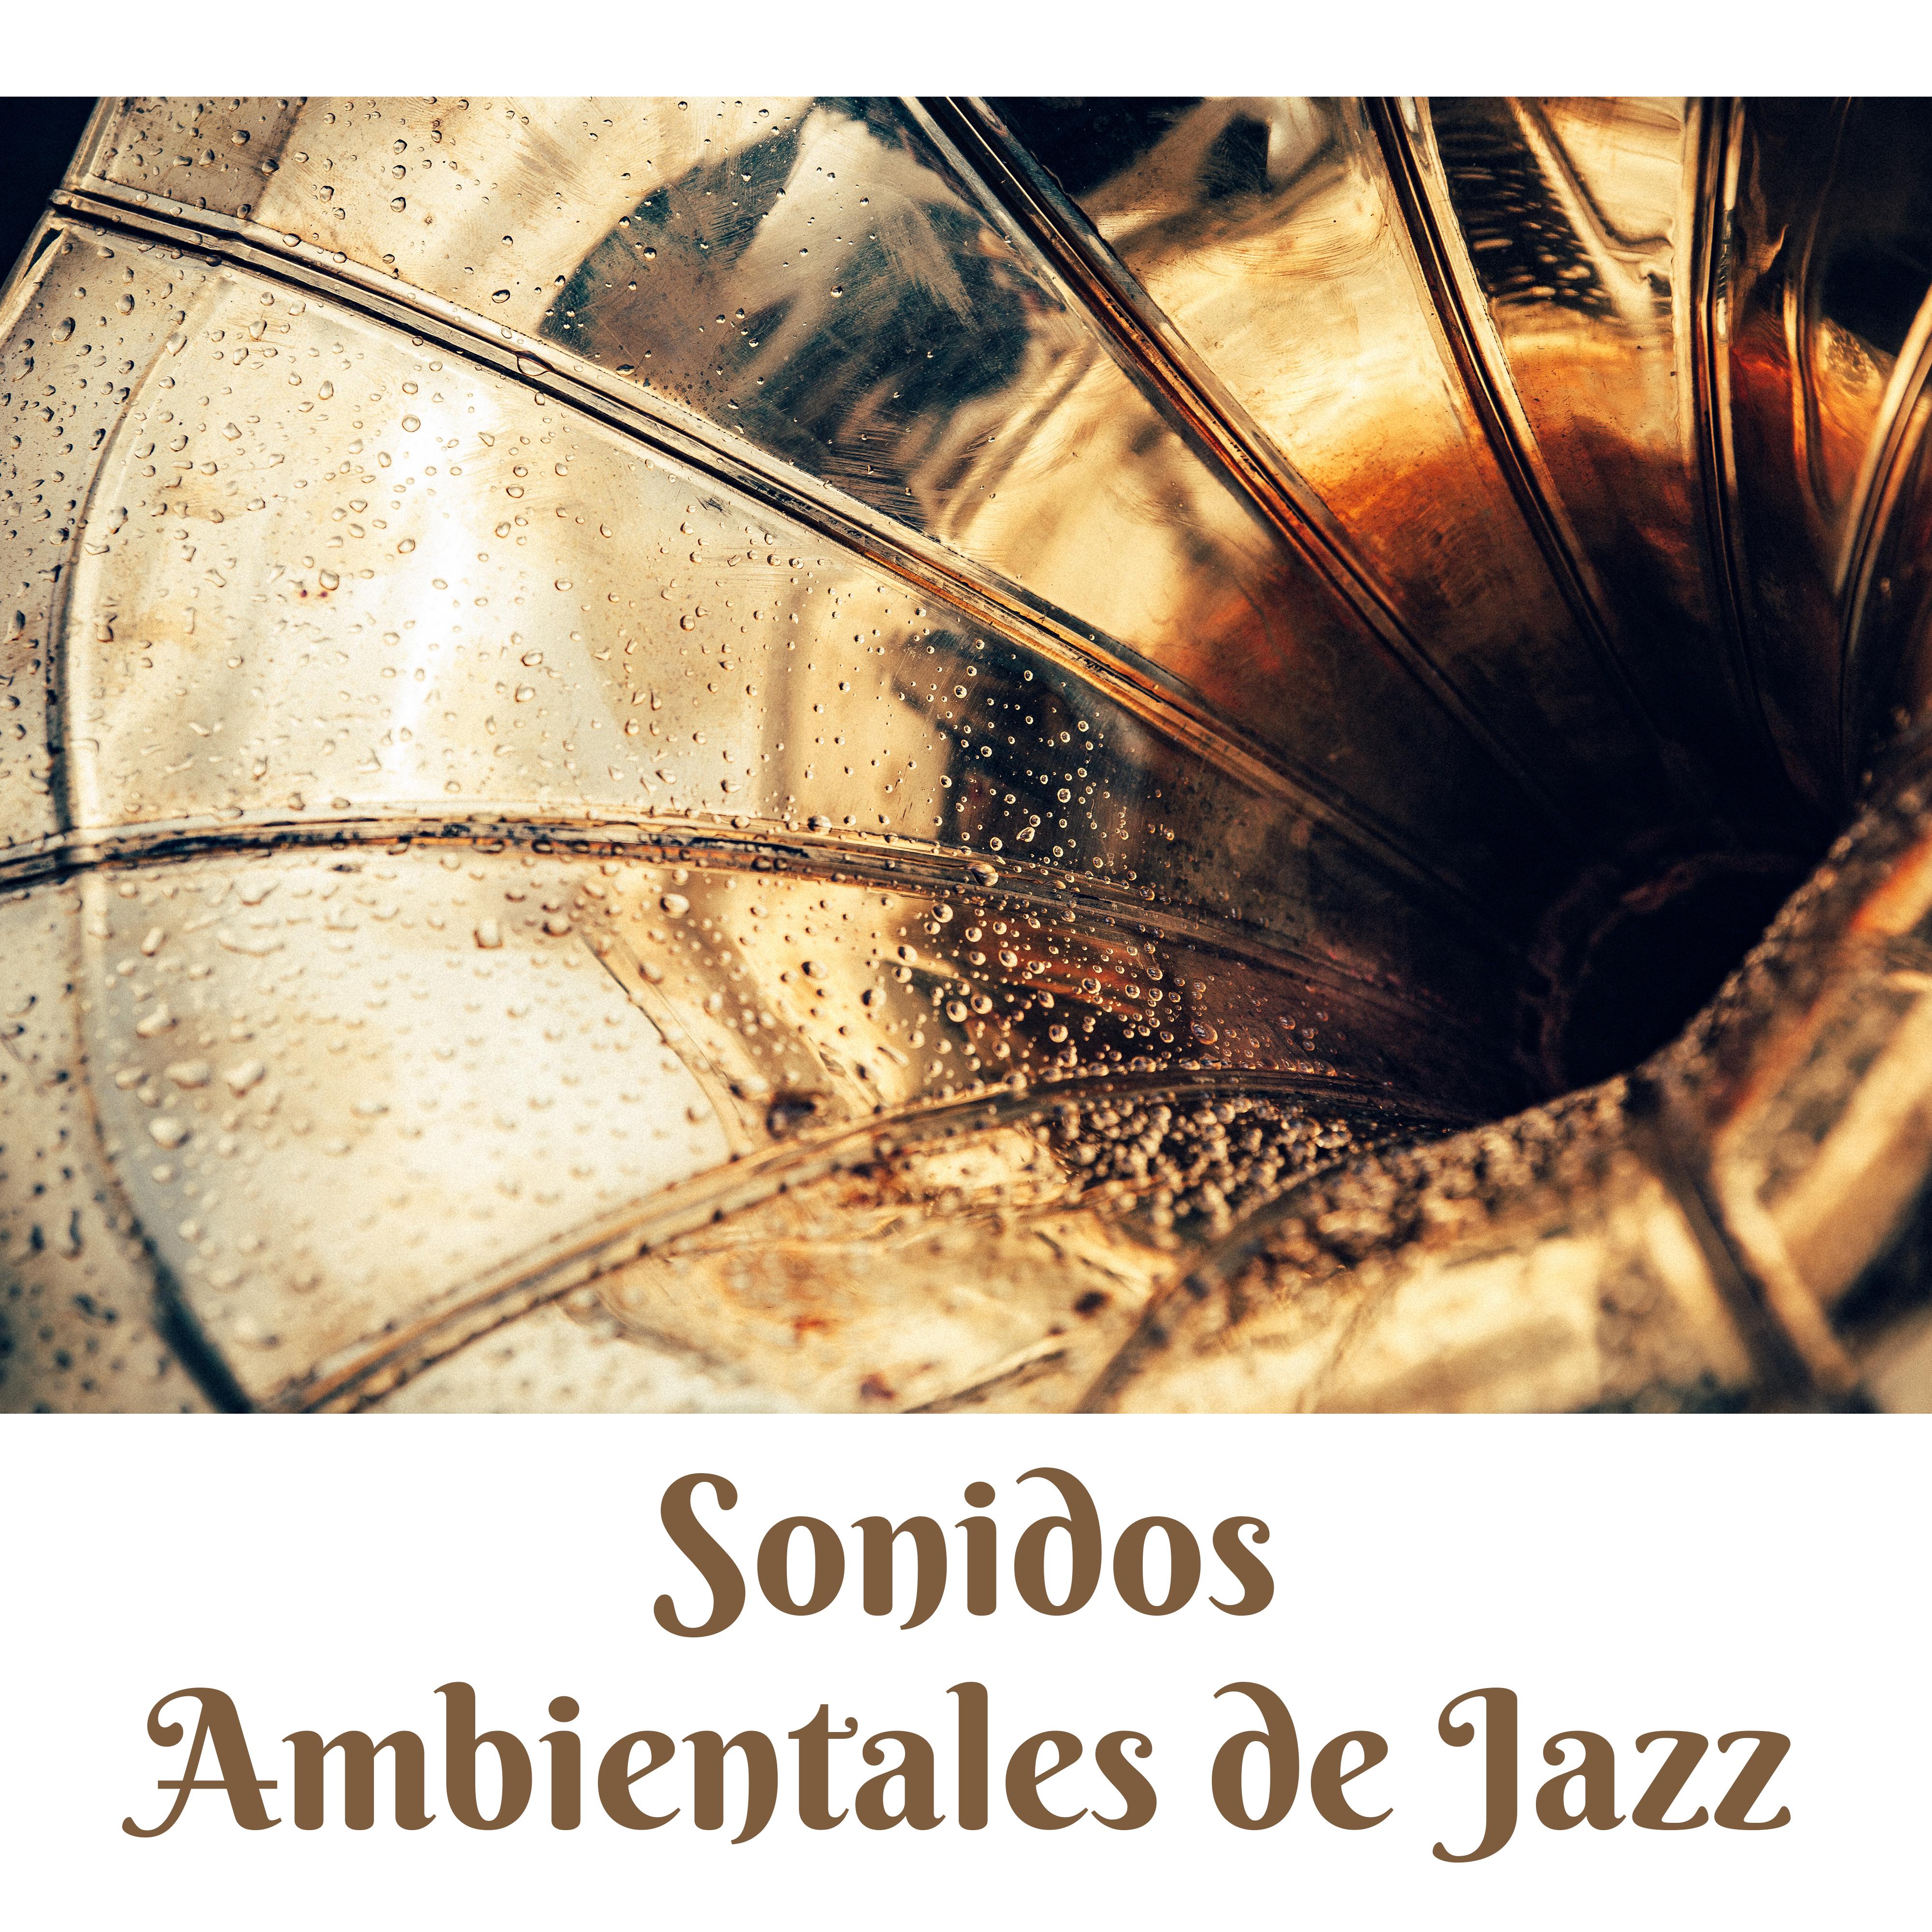 Sonidos Ambientales de Jazz